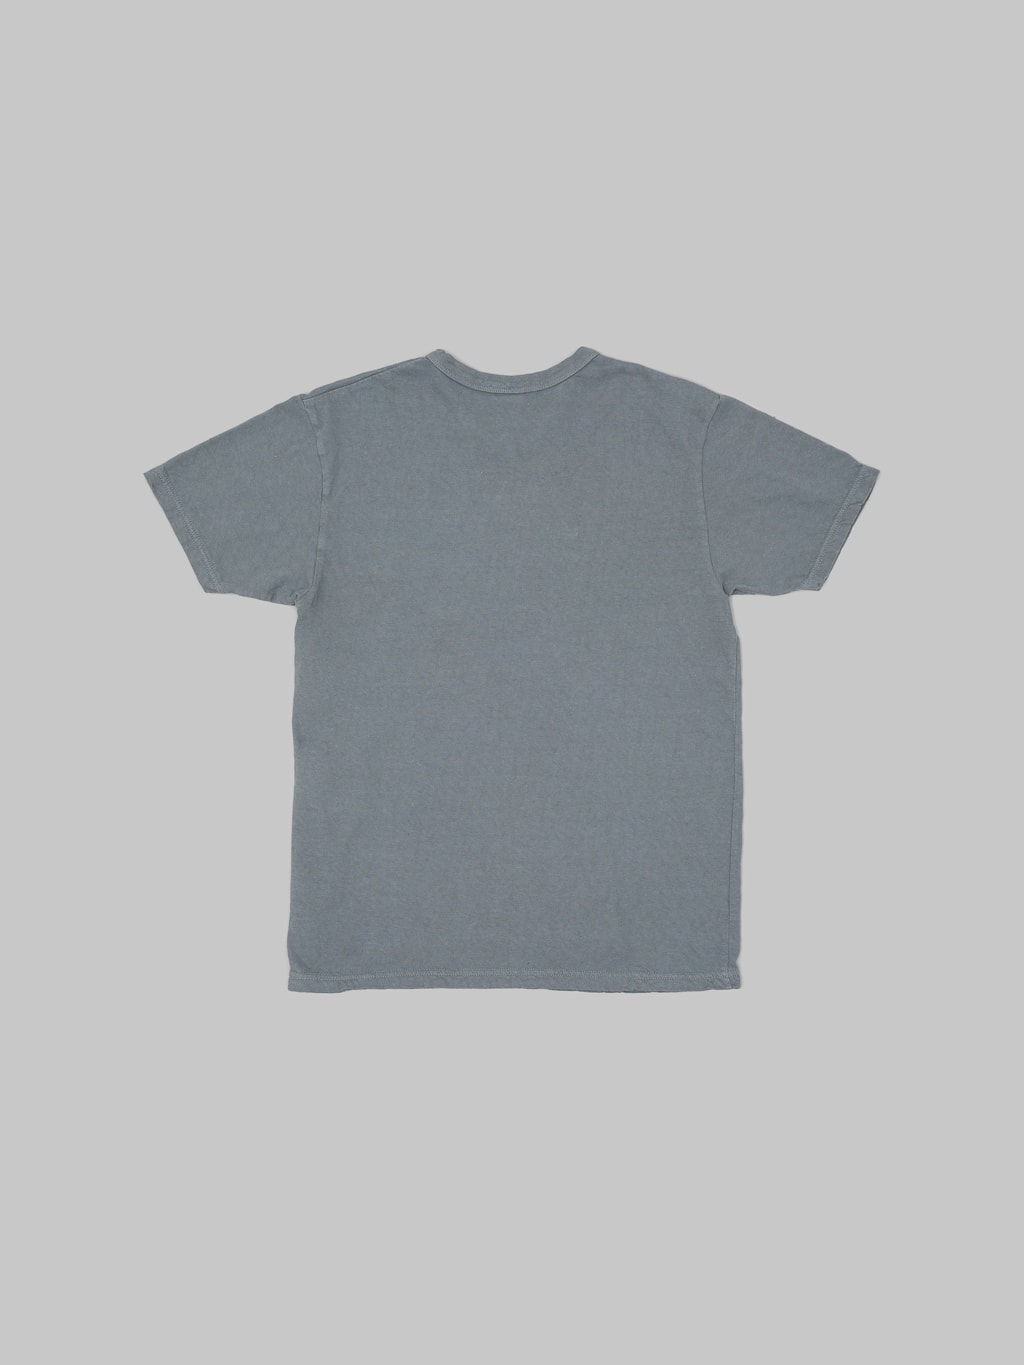 ues logo tshirt grey slim fit vintage 100 cotton